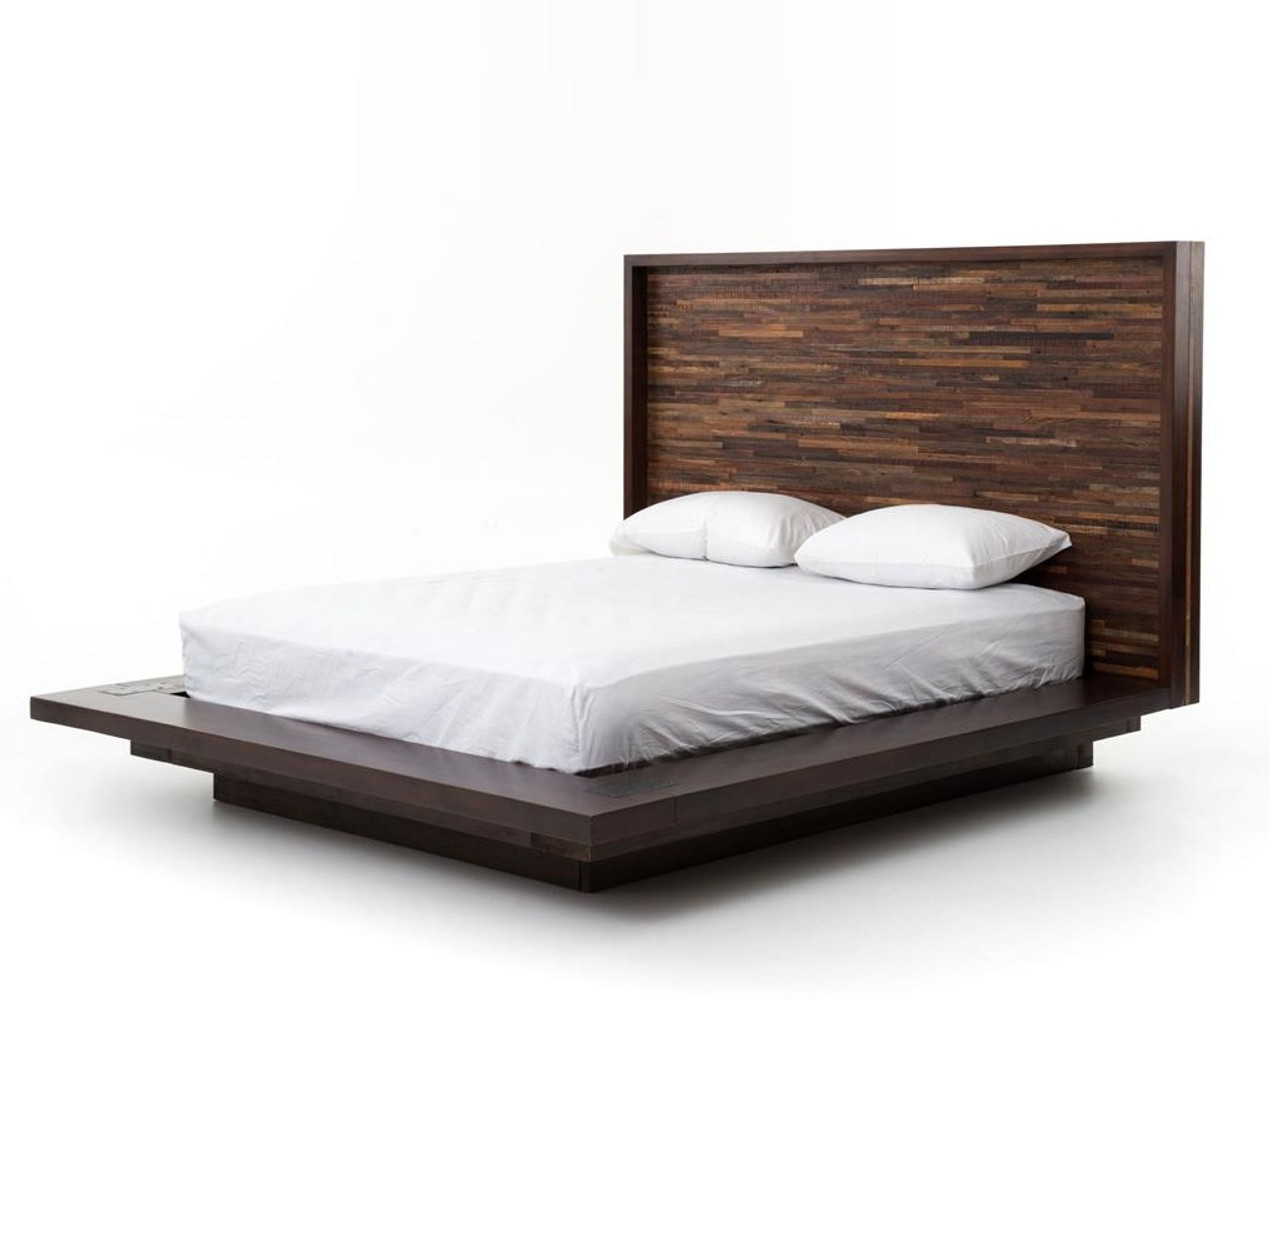 Reclaimed Wood Rustic Devon King Platform Bed Frame | Zin Home